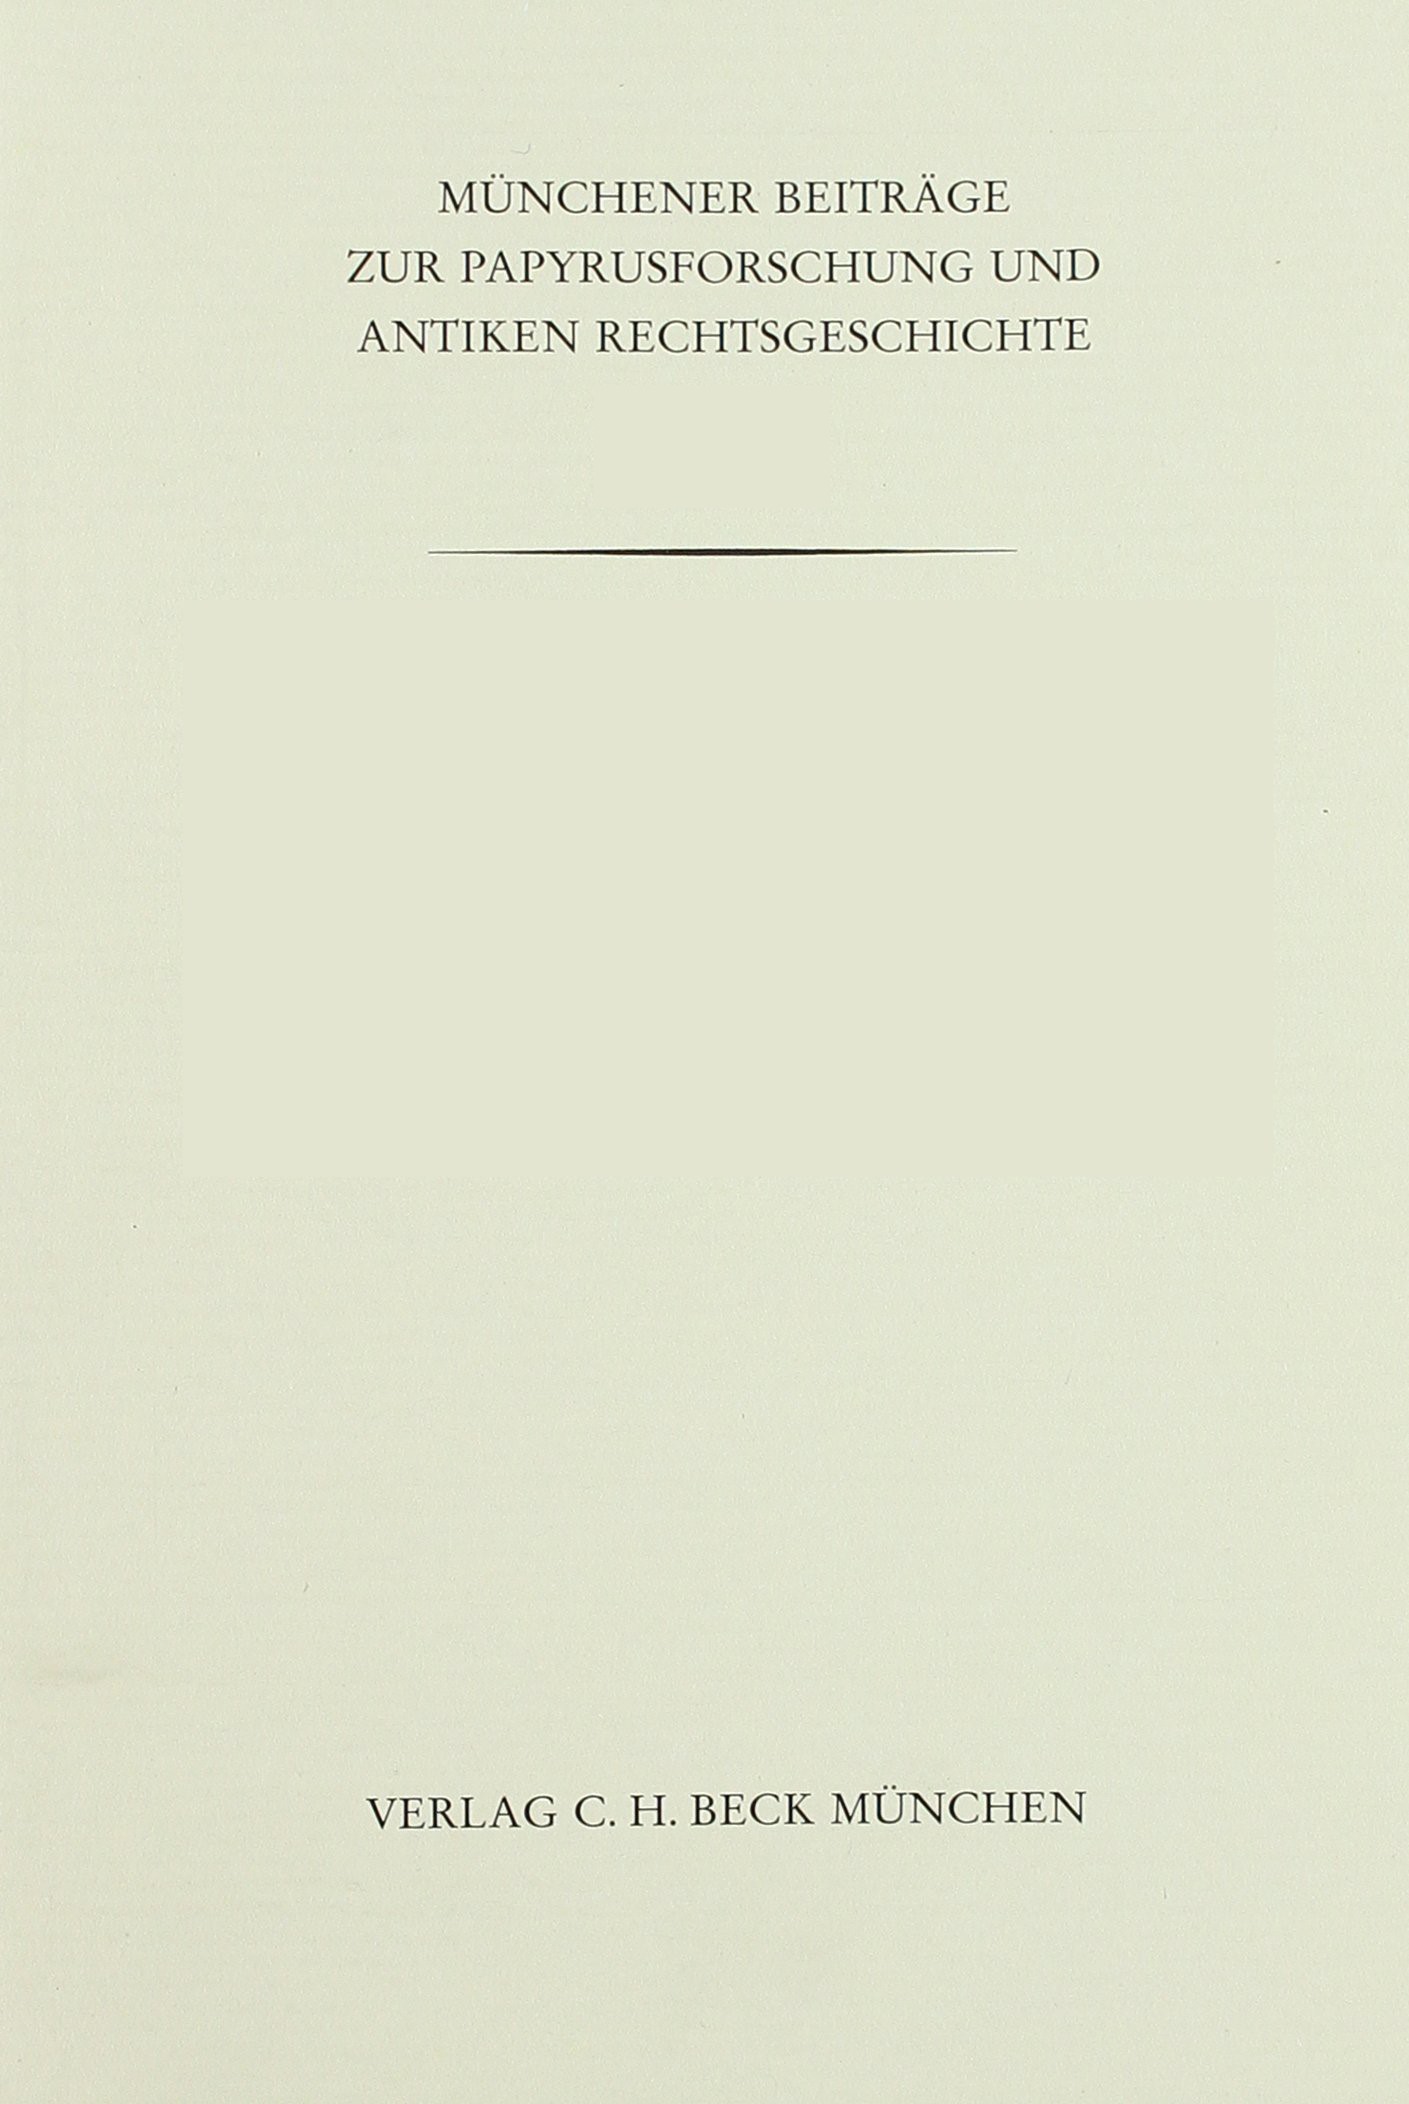 Cover: Bauman, Richard A., Münchener Beiträge zur Papyrusforschung Heft 75:  Lawyers in Roman Republican Politics